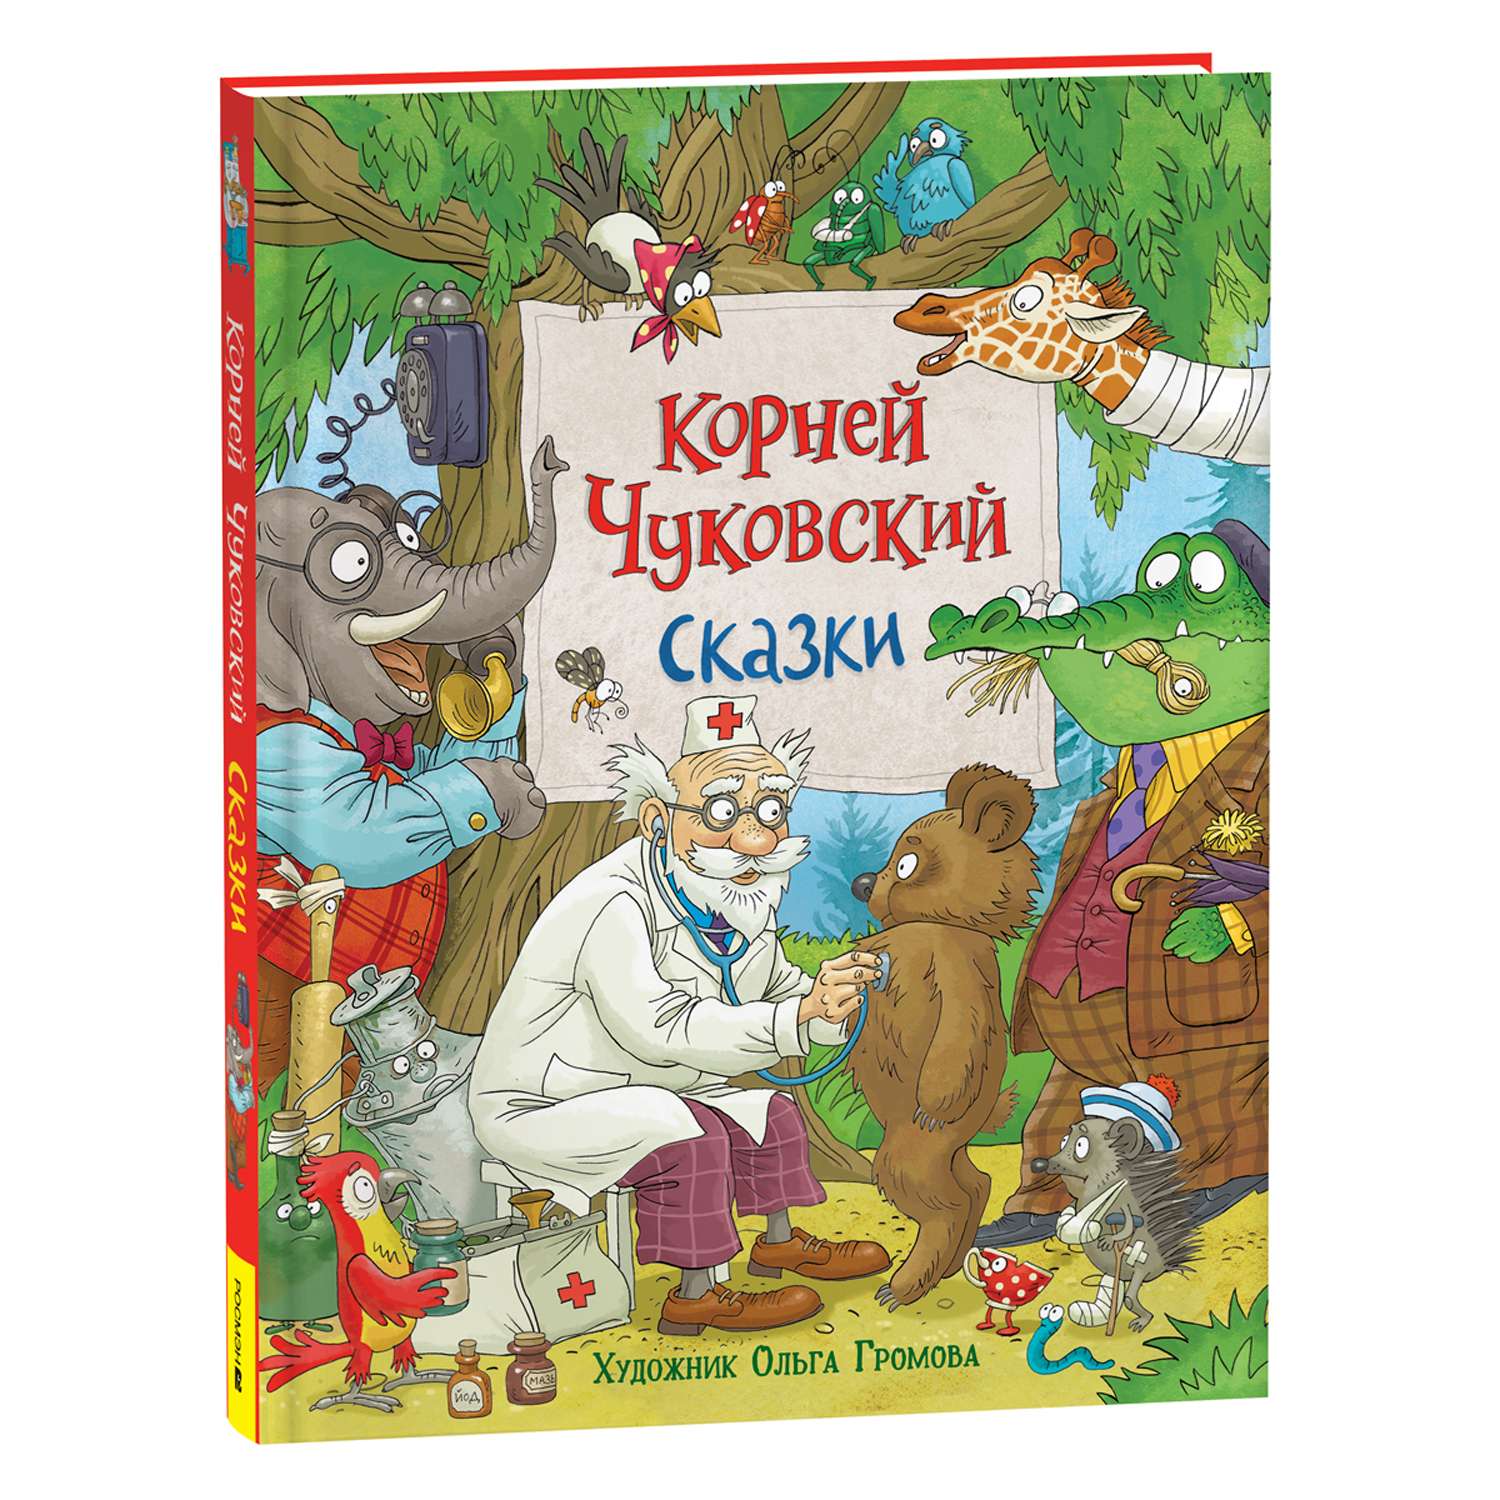 Книга Сказки Чуковский с иллюстрациями Громовой - фото 1